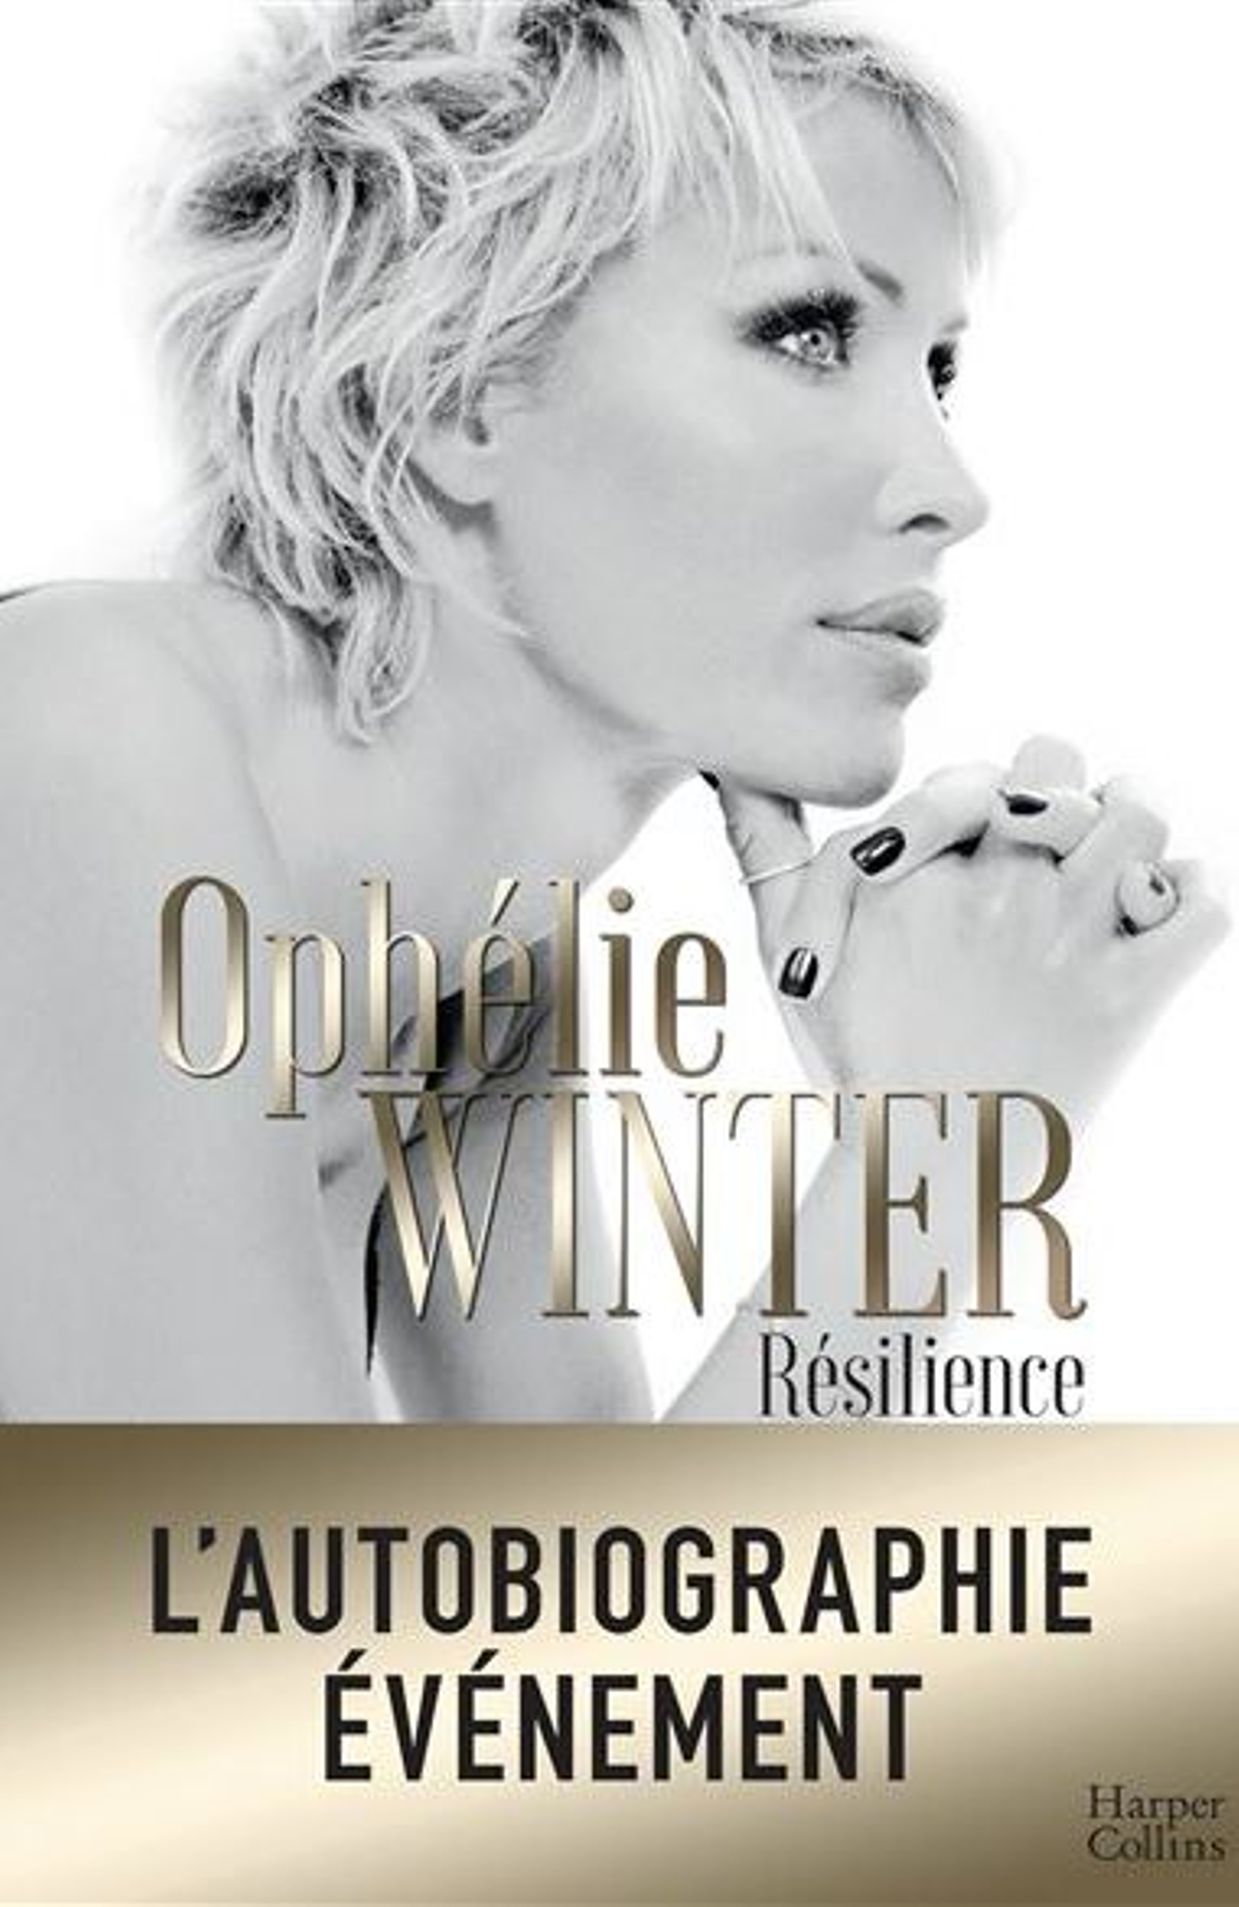 OphÃ©lie Winter raconte les Ã©preuves qu'elle a traversÃ©es - rtbf.be